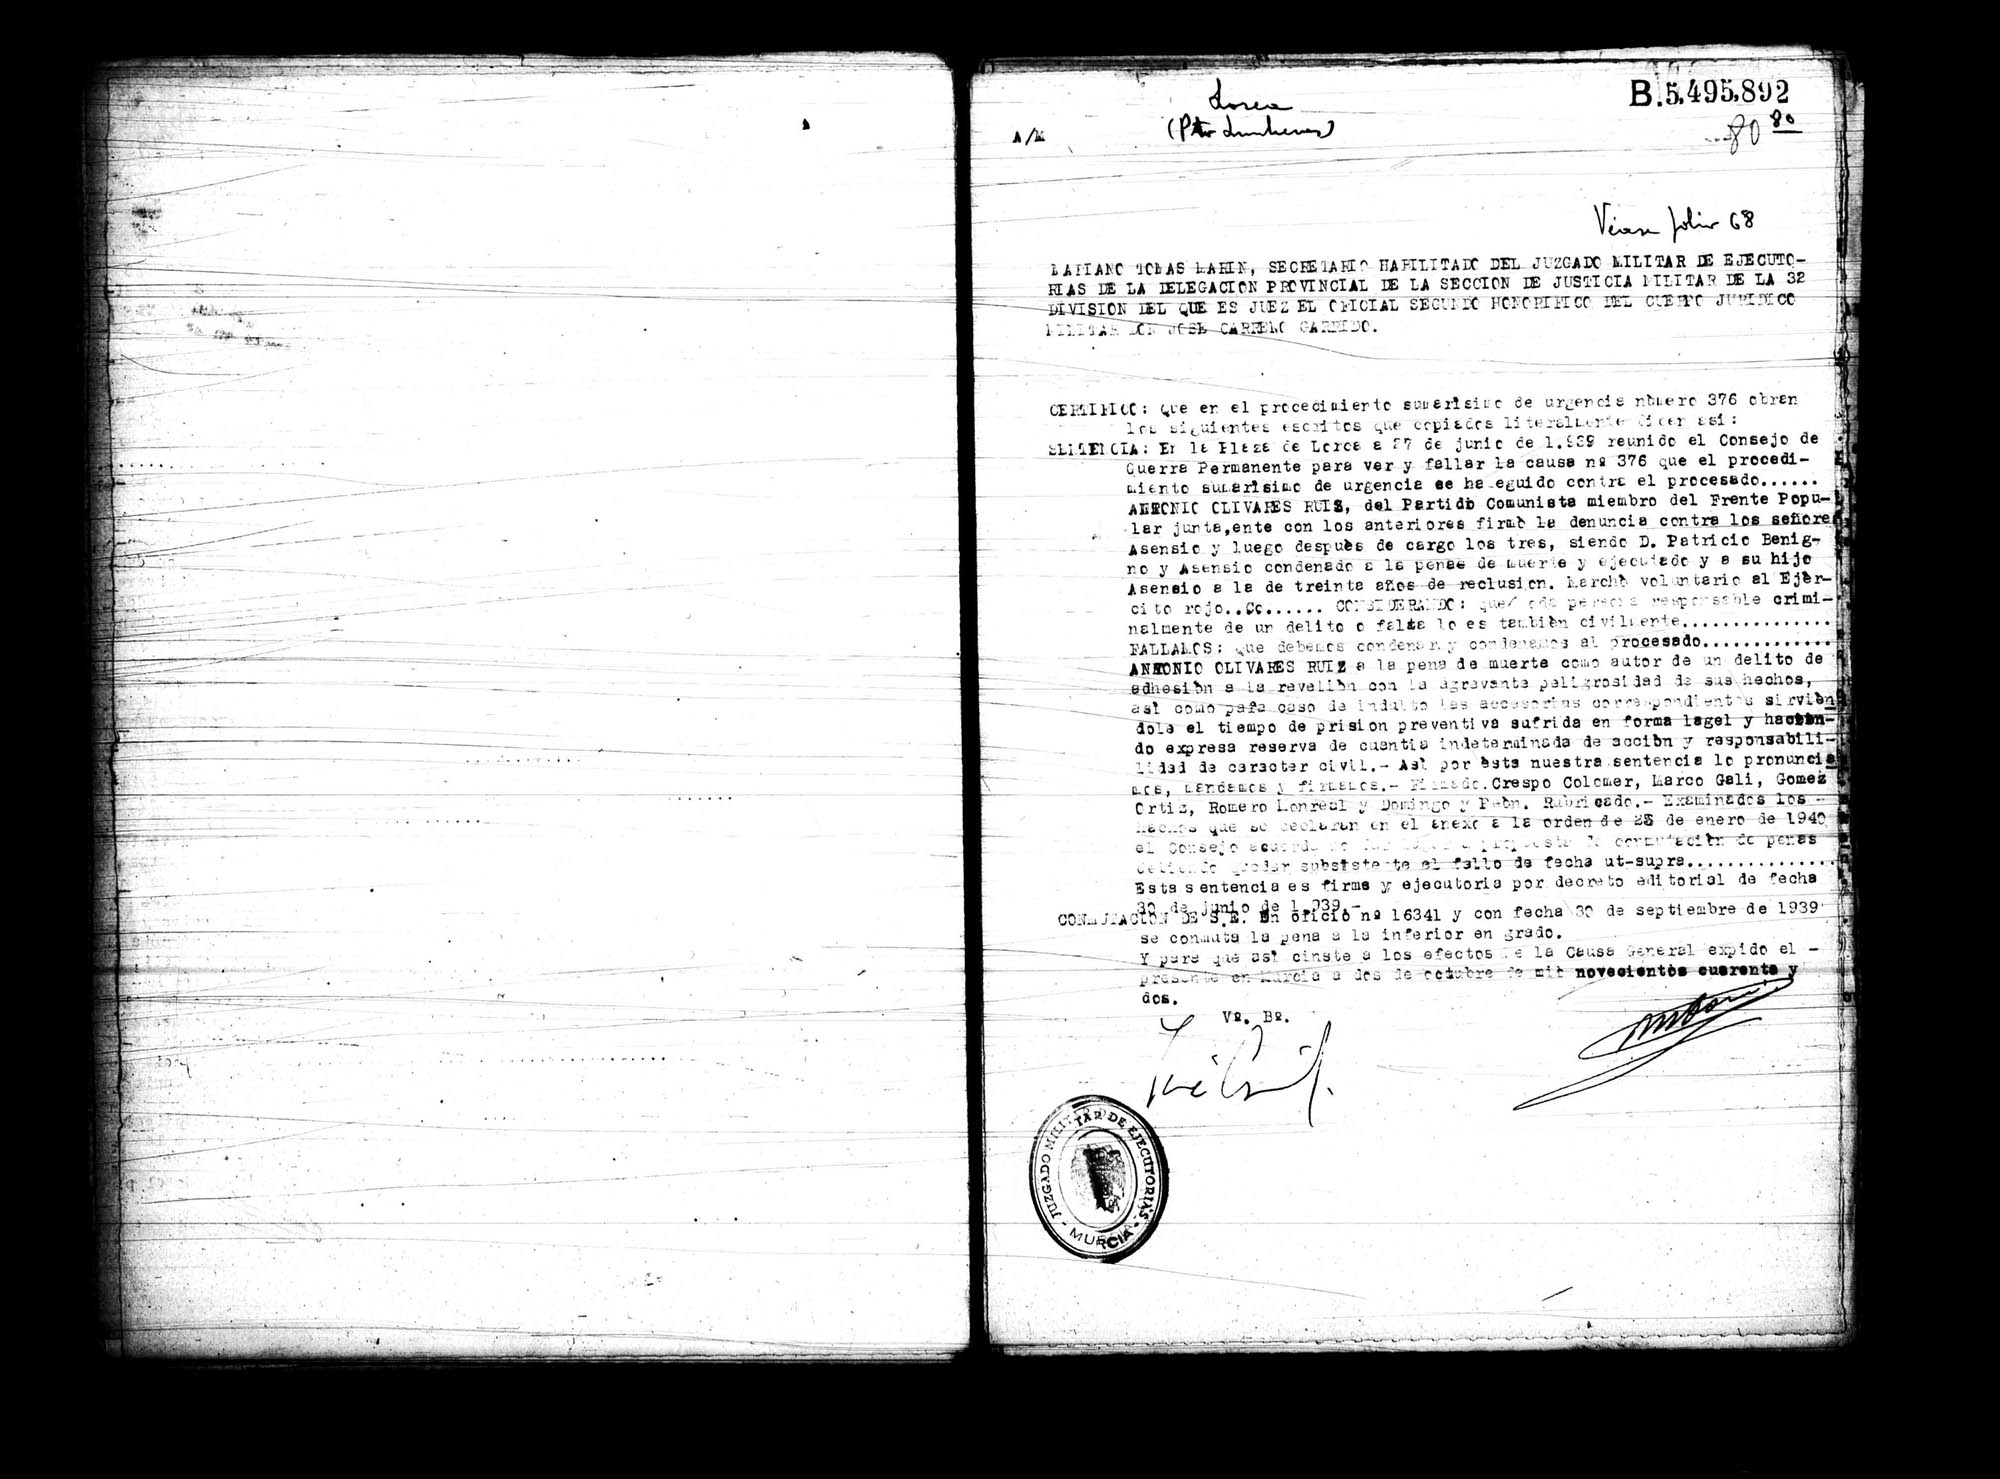 Certificado de la sentencia pronunciada contra Antonio Olivares Ruiz, causa 376, el 27 de junio de 1939 en Lorca.